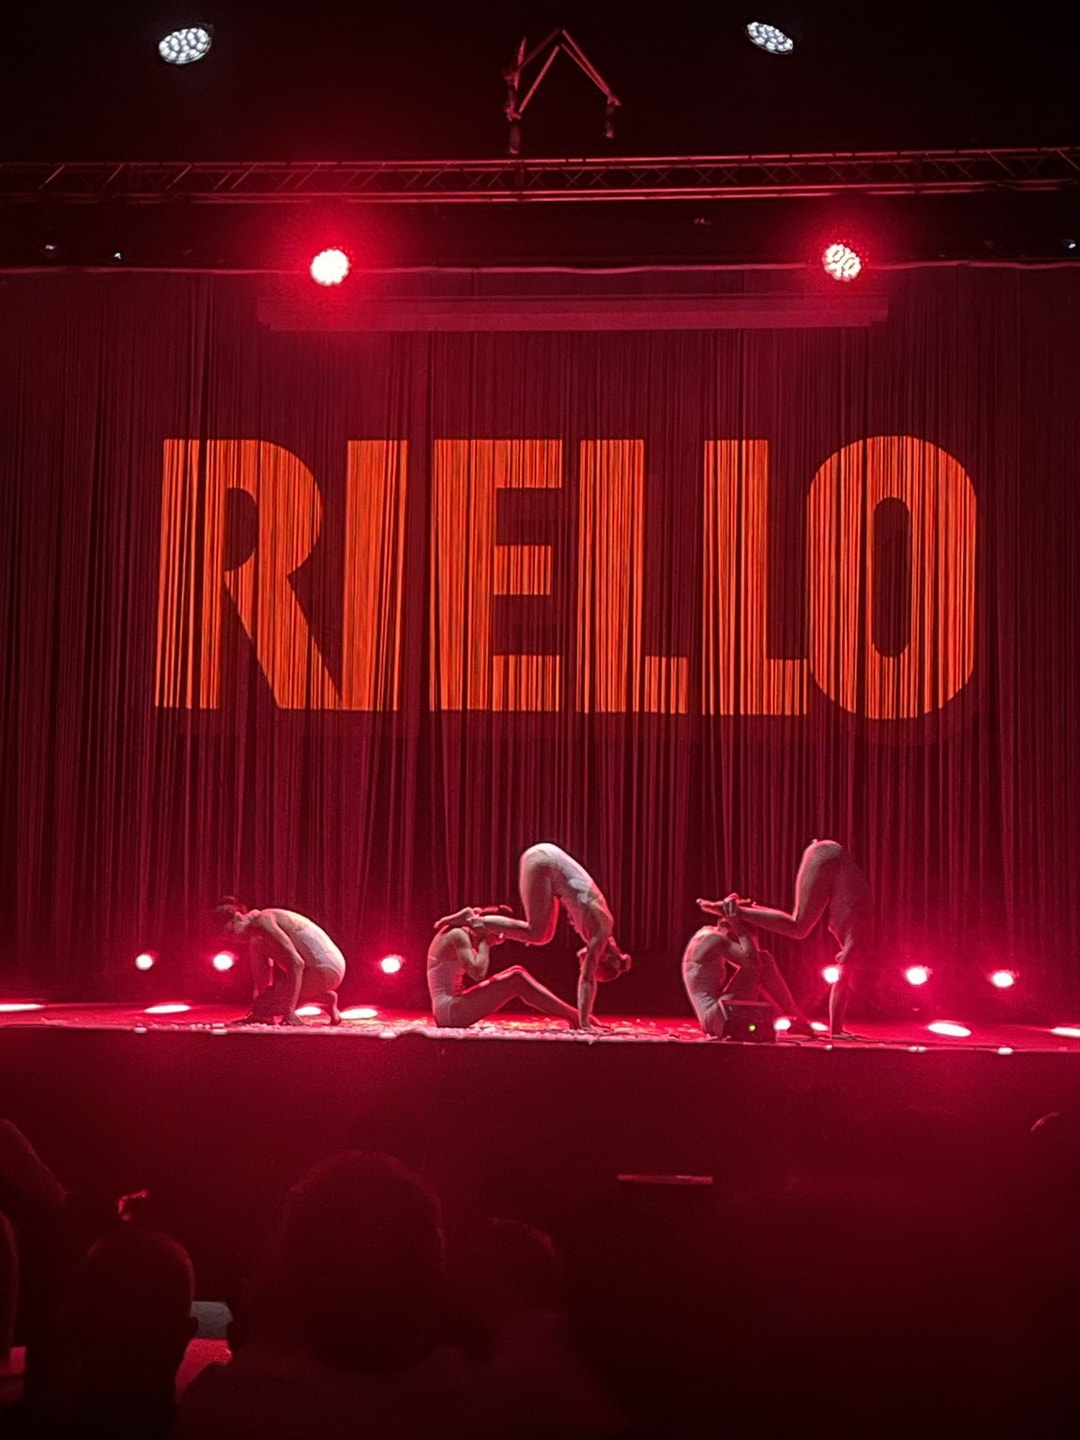 Η Riello γιορτάζει τα 100 χρόνια της, εστιασμένη σε ένα σταθερό και βιώσιμο μέλλον